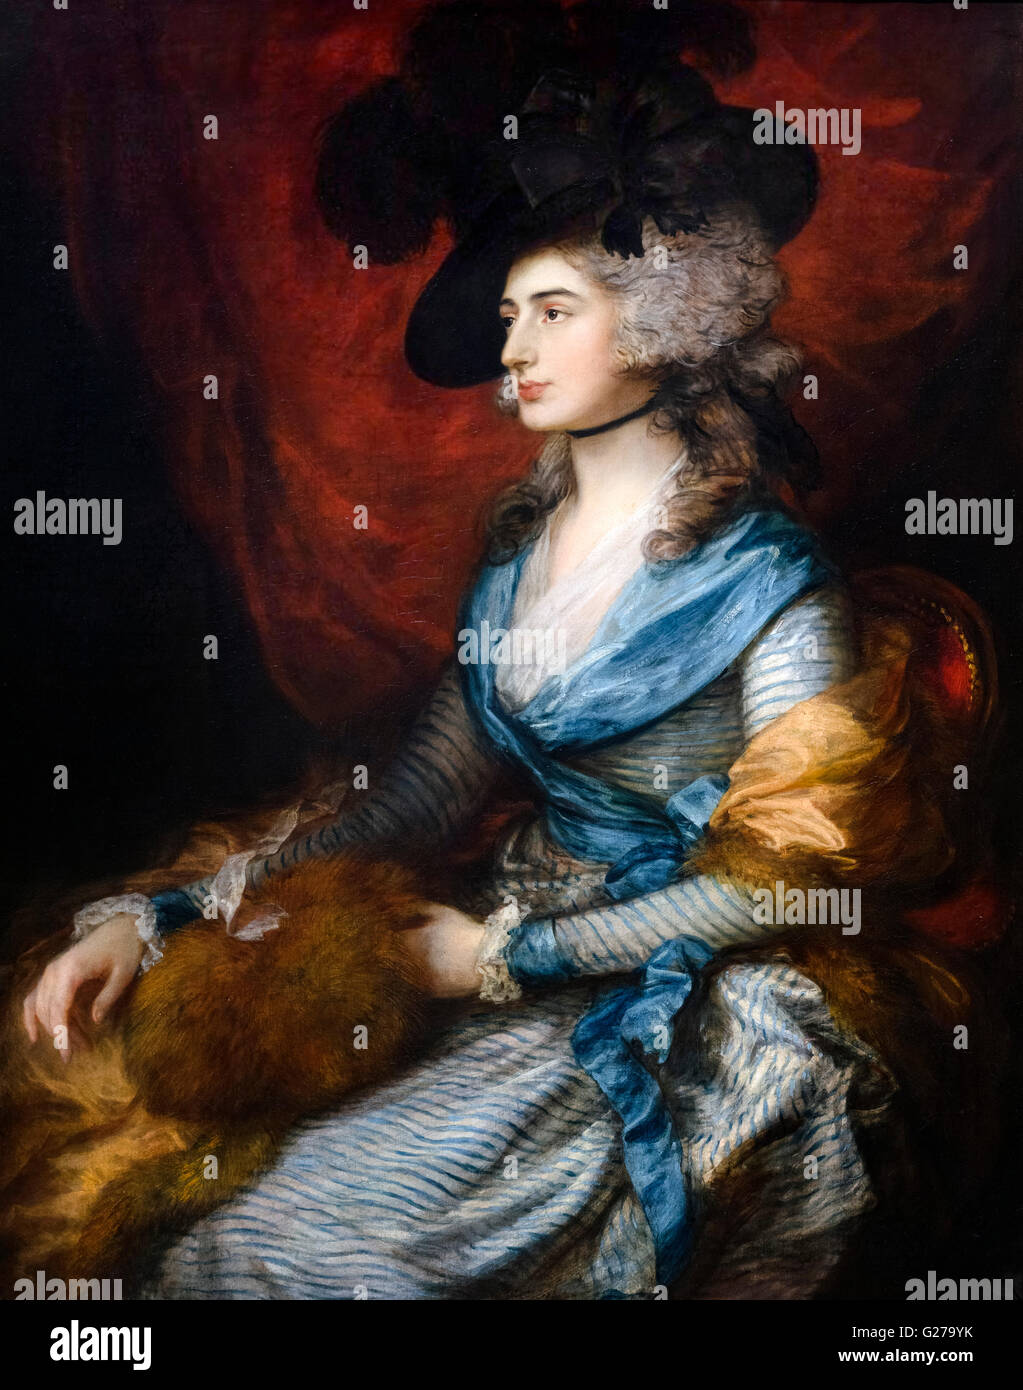 Sarah Siddons, ritratto del famoso 18thC attrice Shakesperiana di Thomas Gainsborough, olio su tela, 1785. Foto Stock